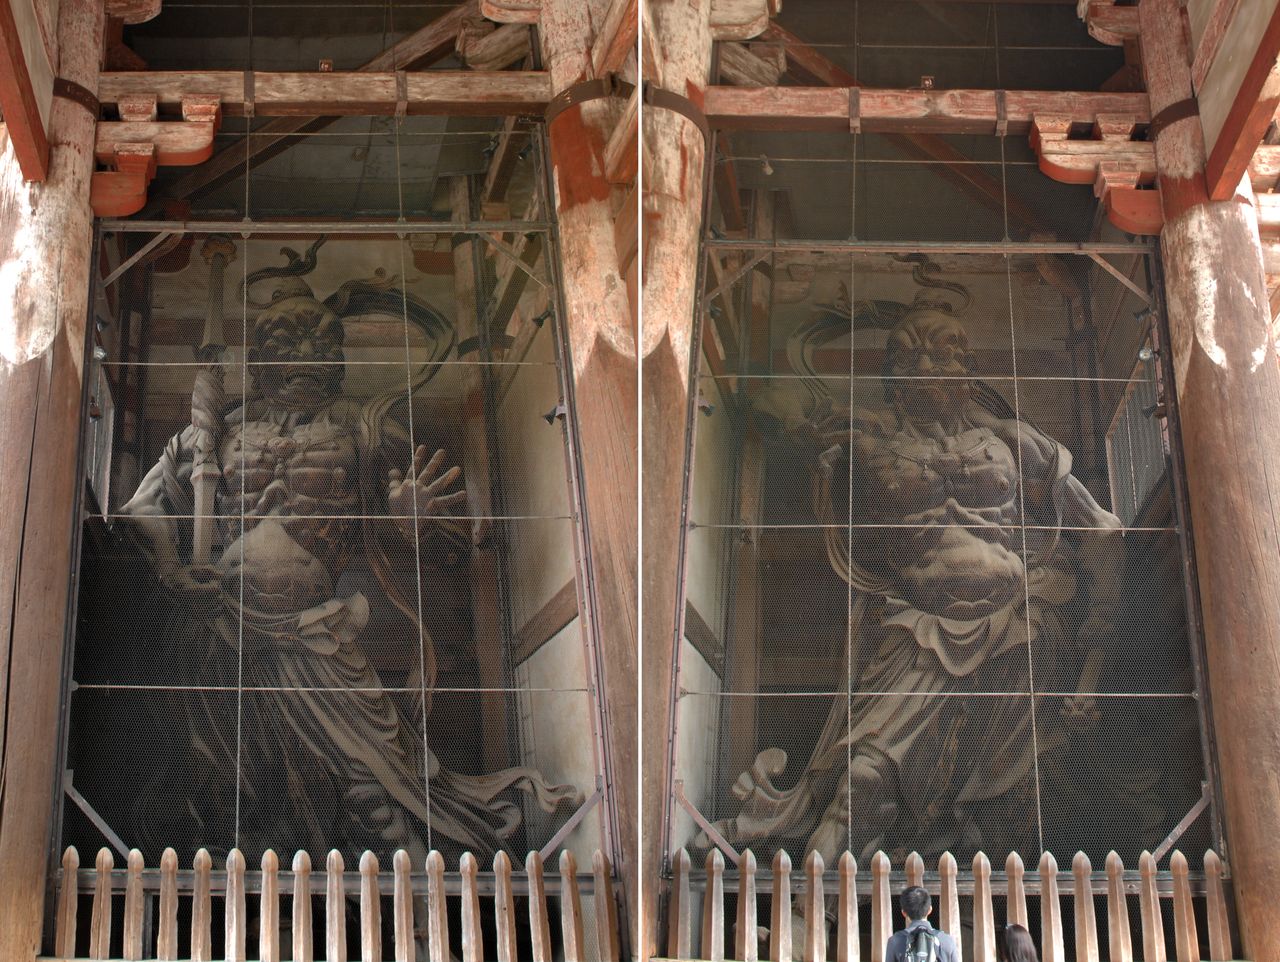 Статуи Конго рикиси (Национальное достояние) в воротах Нандаймон отличаются от прочих подобных скульптур тем, что обращены друг к другу лицом. Слева – Агё, справа – Унгё